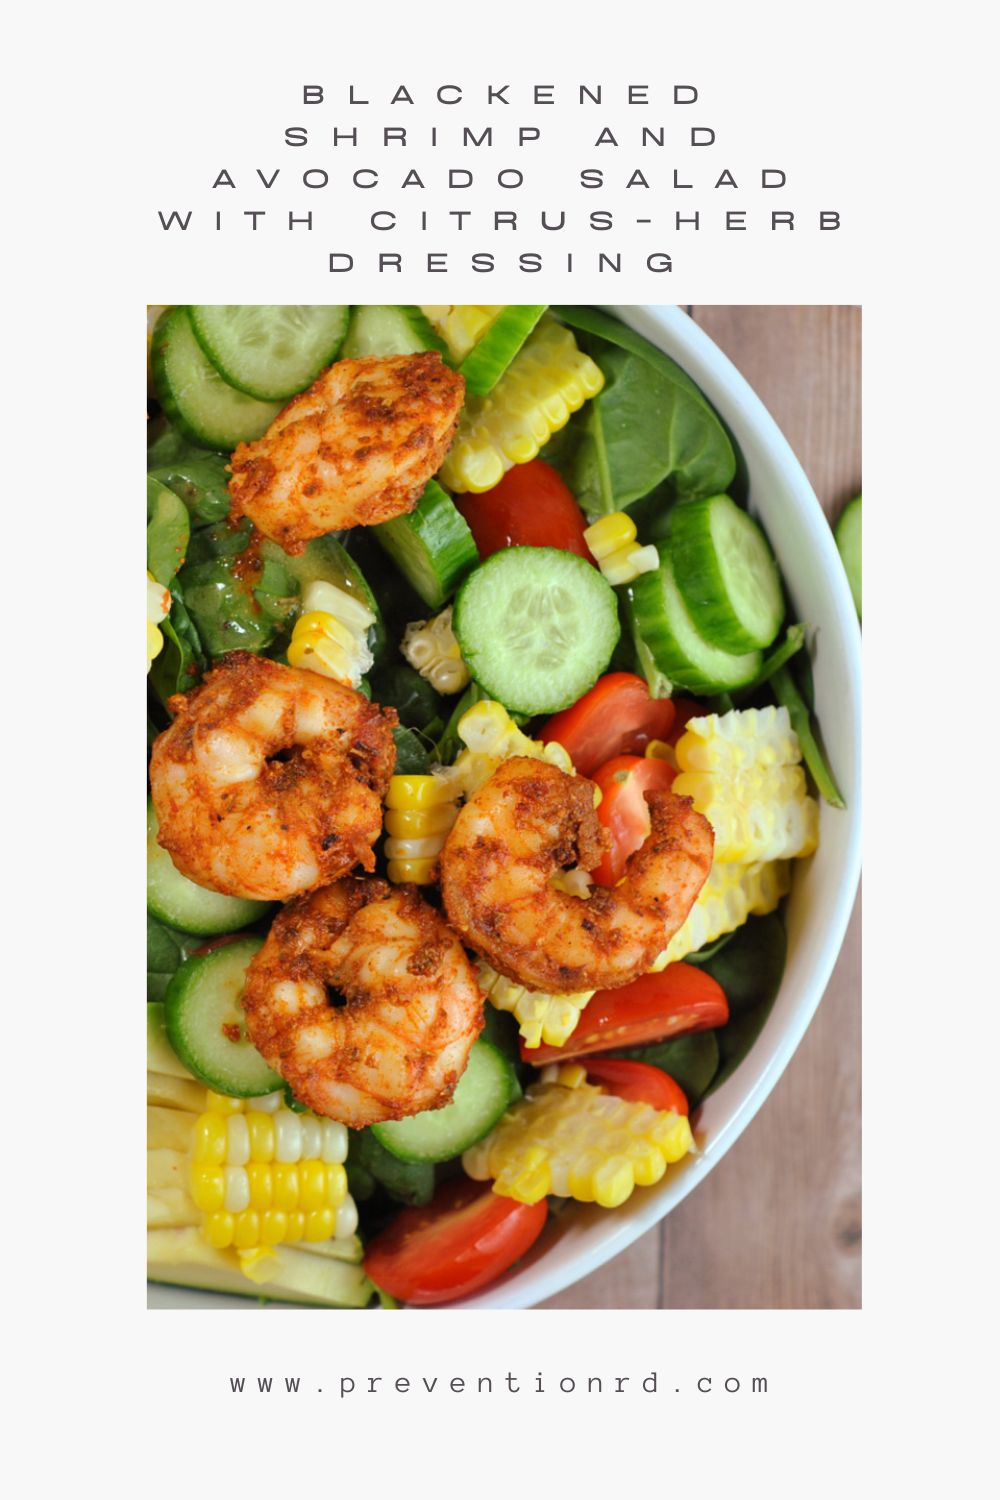 Blackened Shrimp and Avocado Salad with Citrus-Herb Dressing via @preventionrd